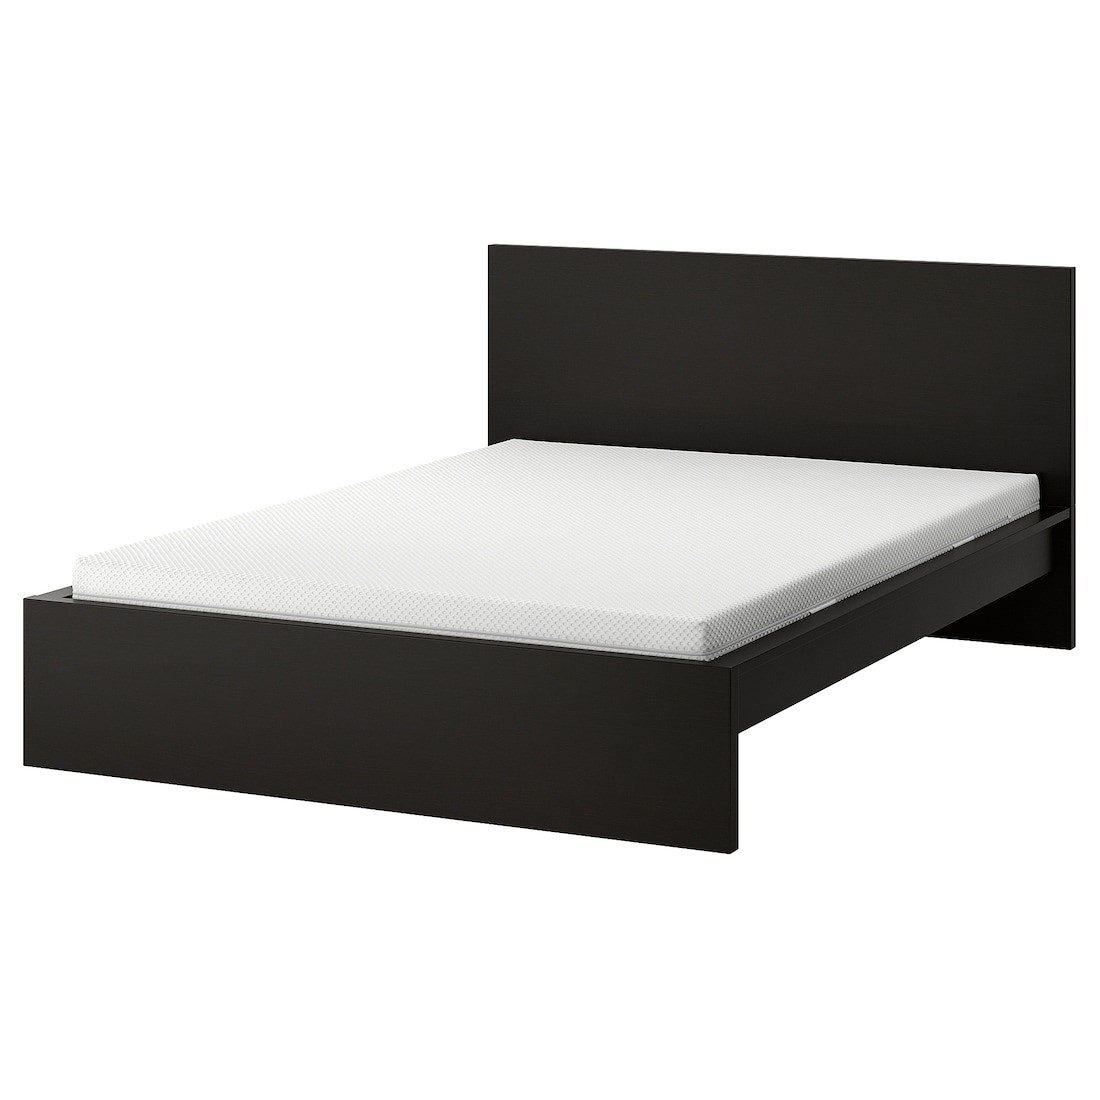 MALM Ліжко з матрацом, чорно-коричневий/ Åbygda середньої твердості, 140x200 см